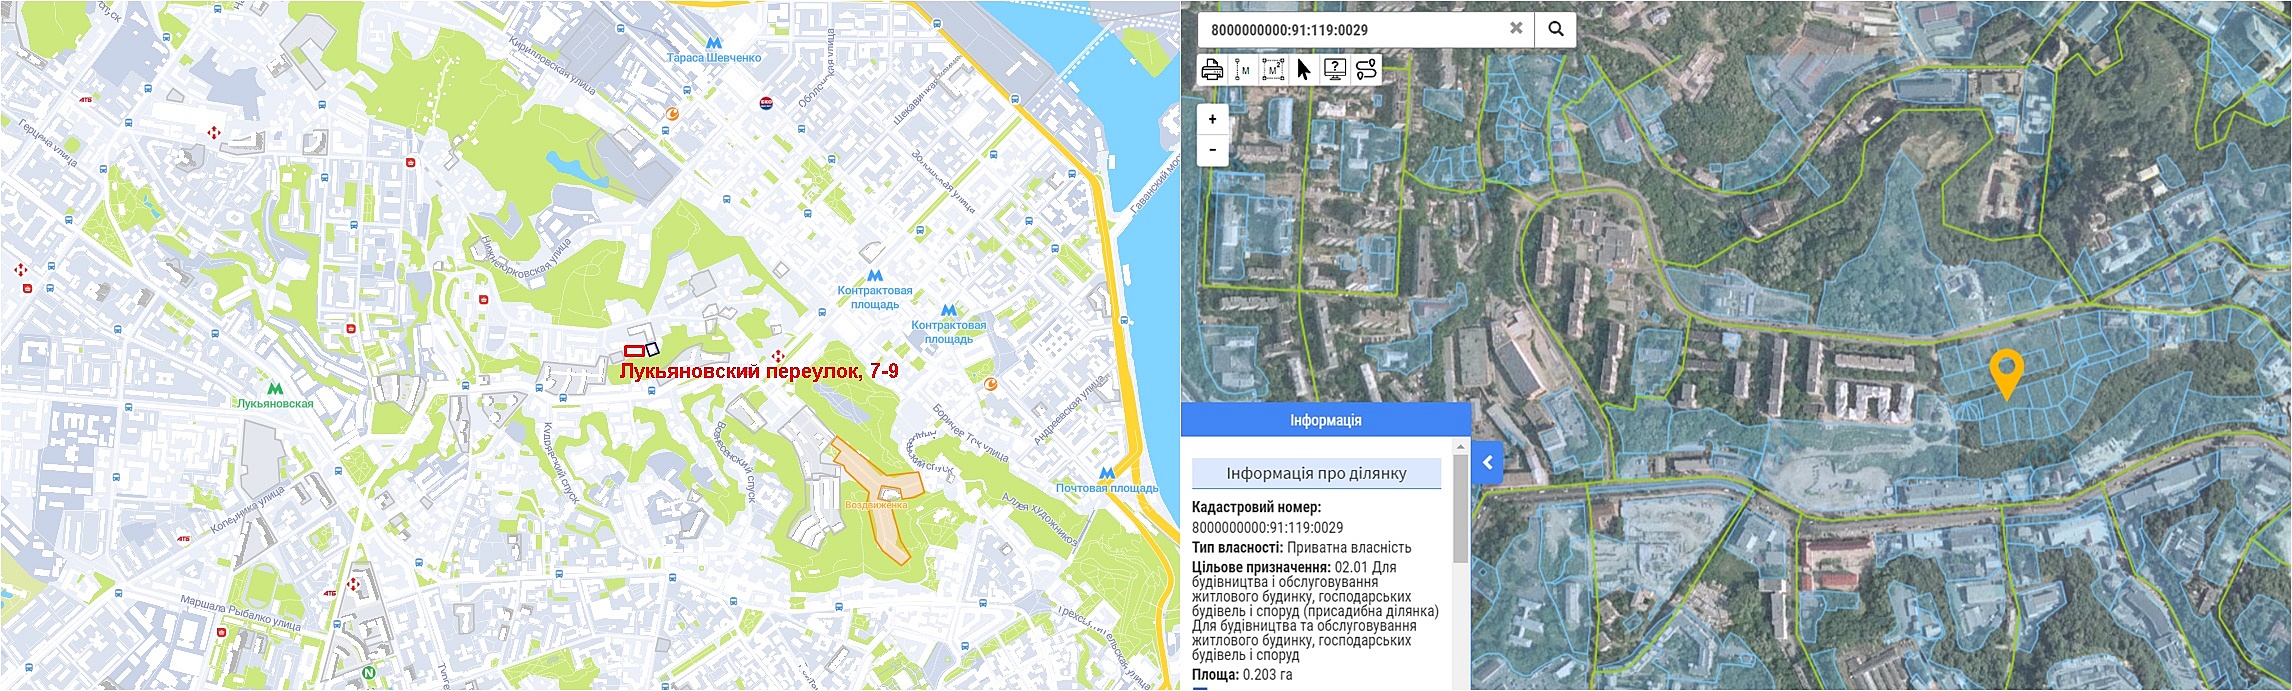 Будущий ЖК по Лукьяновскому переулку, 7-9 на карте и данные кадастра